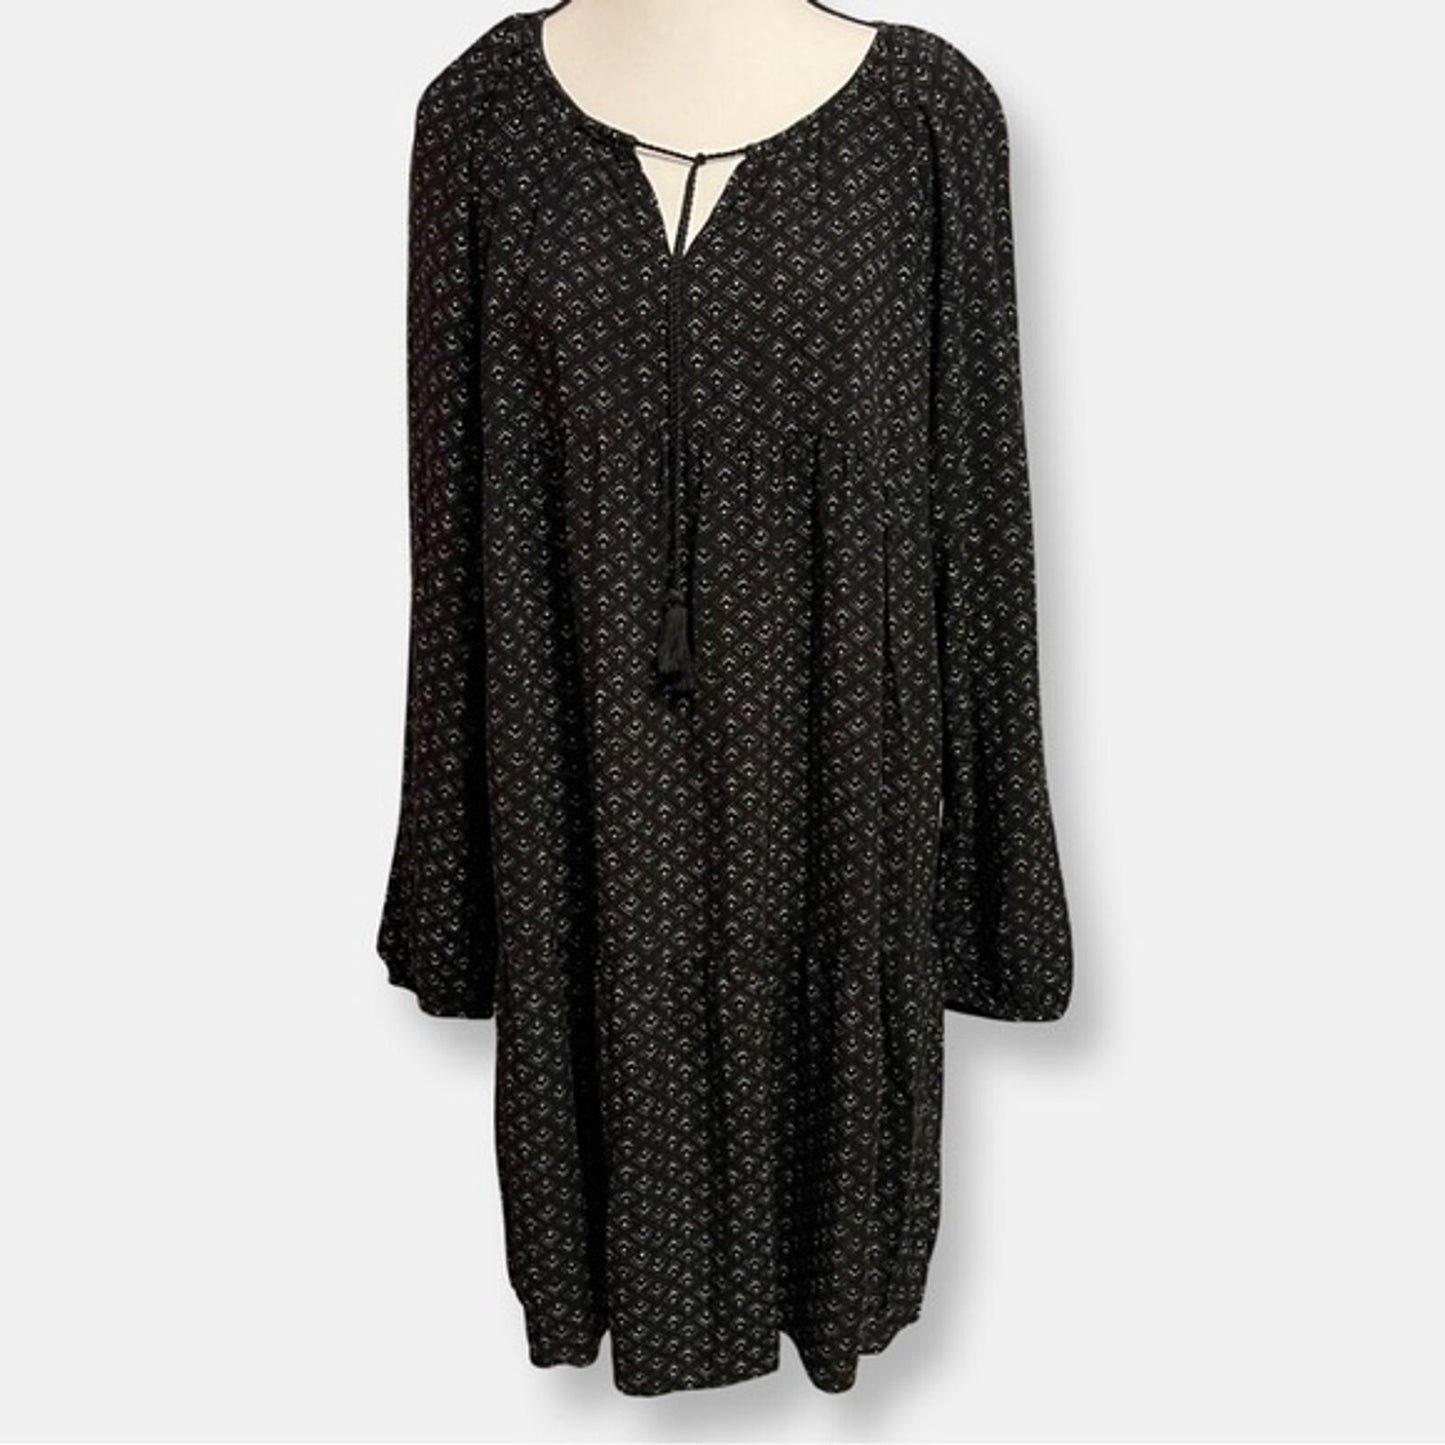 Long Sleeve Boho Peasant Dress Large Sonoma Goods For Life x Lauren Lane